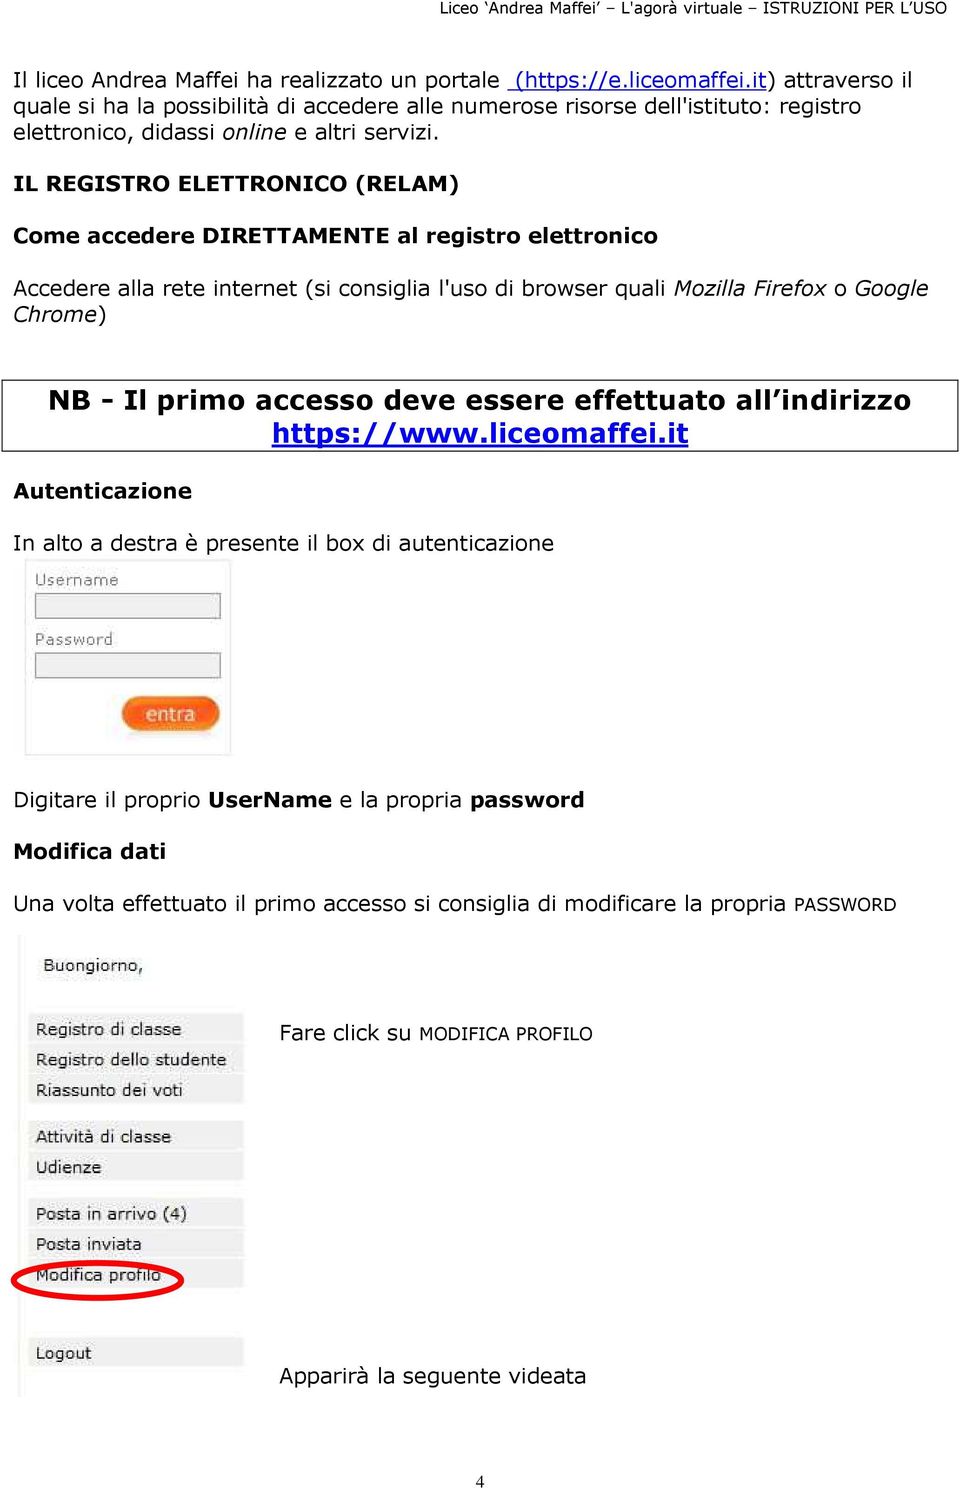 IL REGISTRO ELETTRONICO (RELAM) Come accedere DIRETTAMENTE al registro elettronico Accedere alla rete internet (si consiglia l'uso di browser quali Mozilla Firefox o Google Chrome) NB - Il